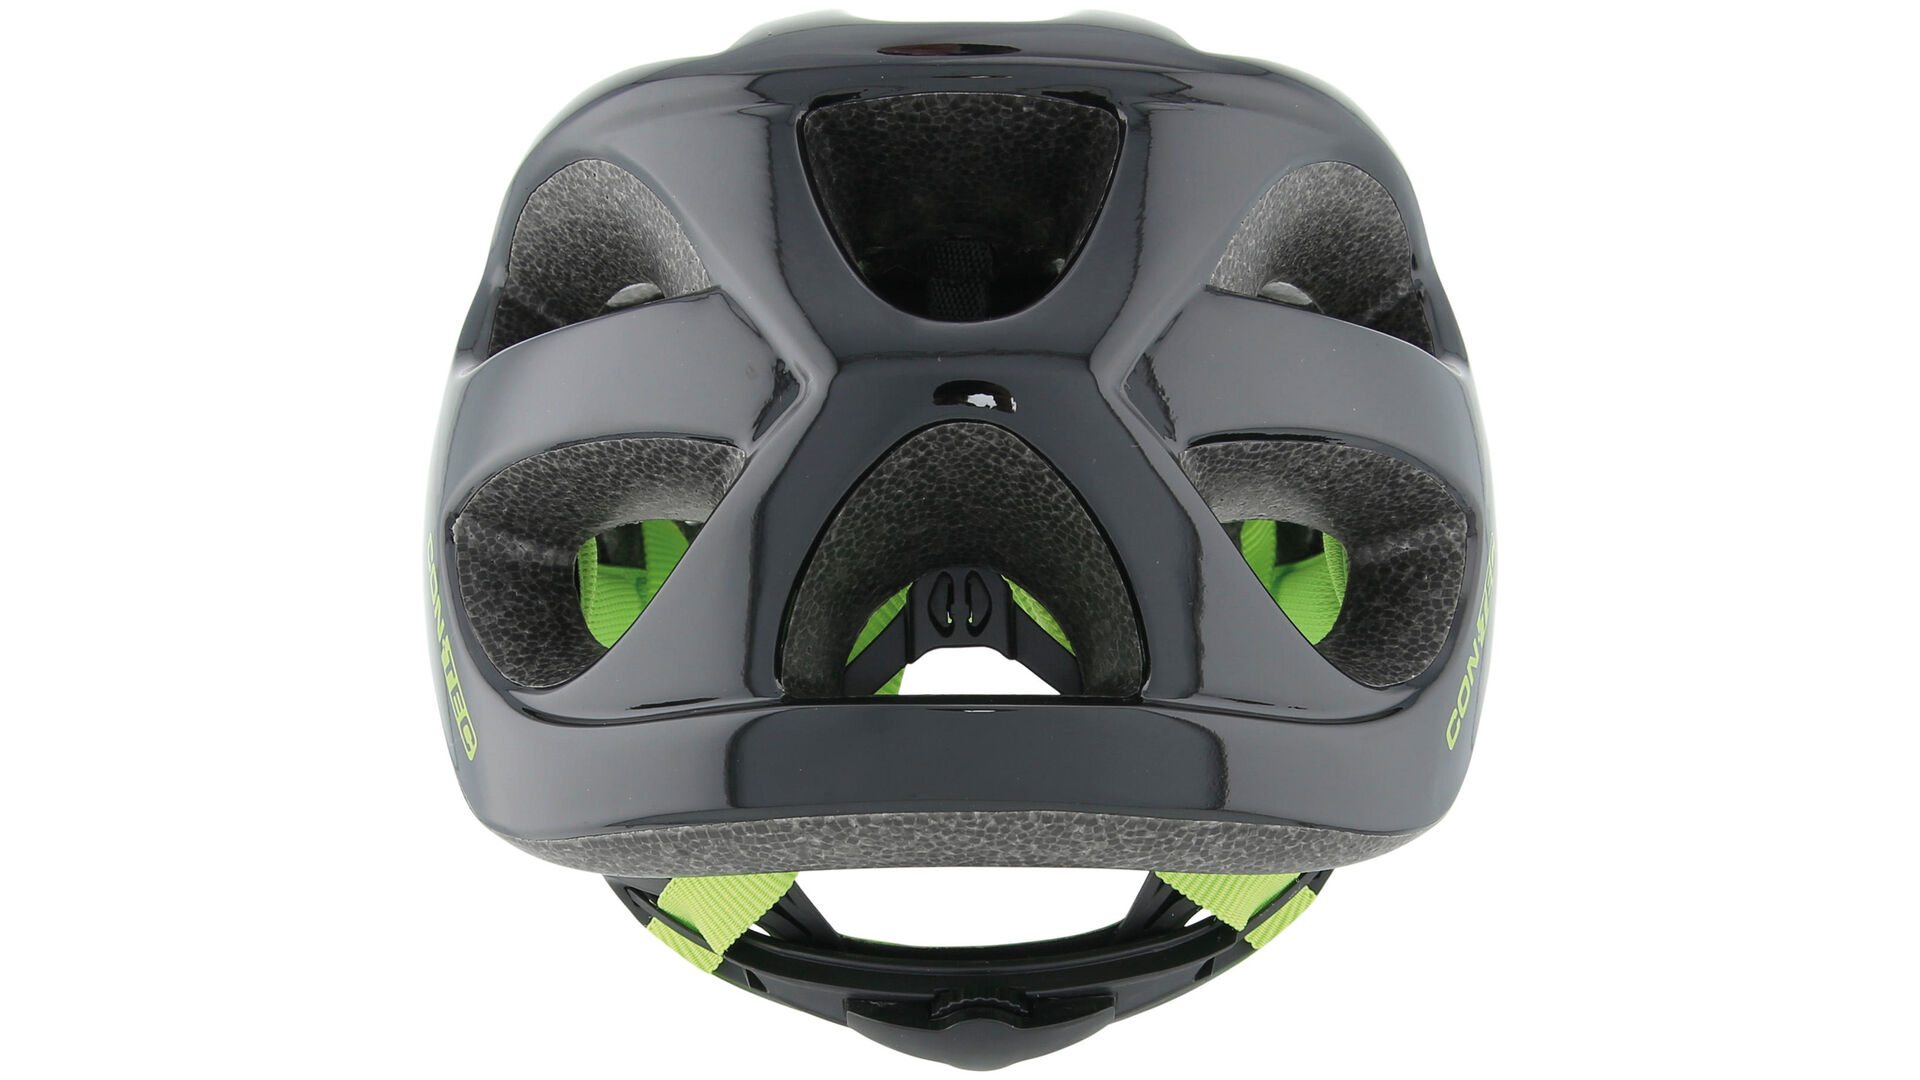 Contec MTB-Helm Rok.23 schwarz neon grün Größe M 55-58 cm 